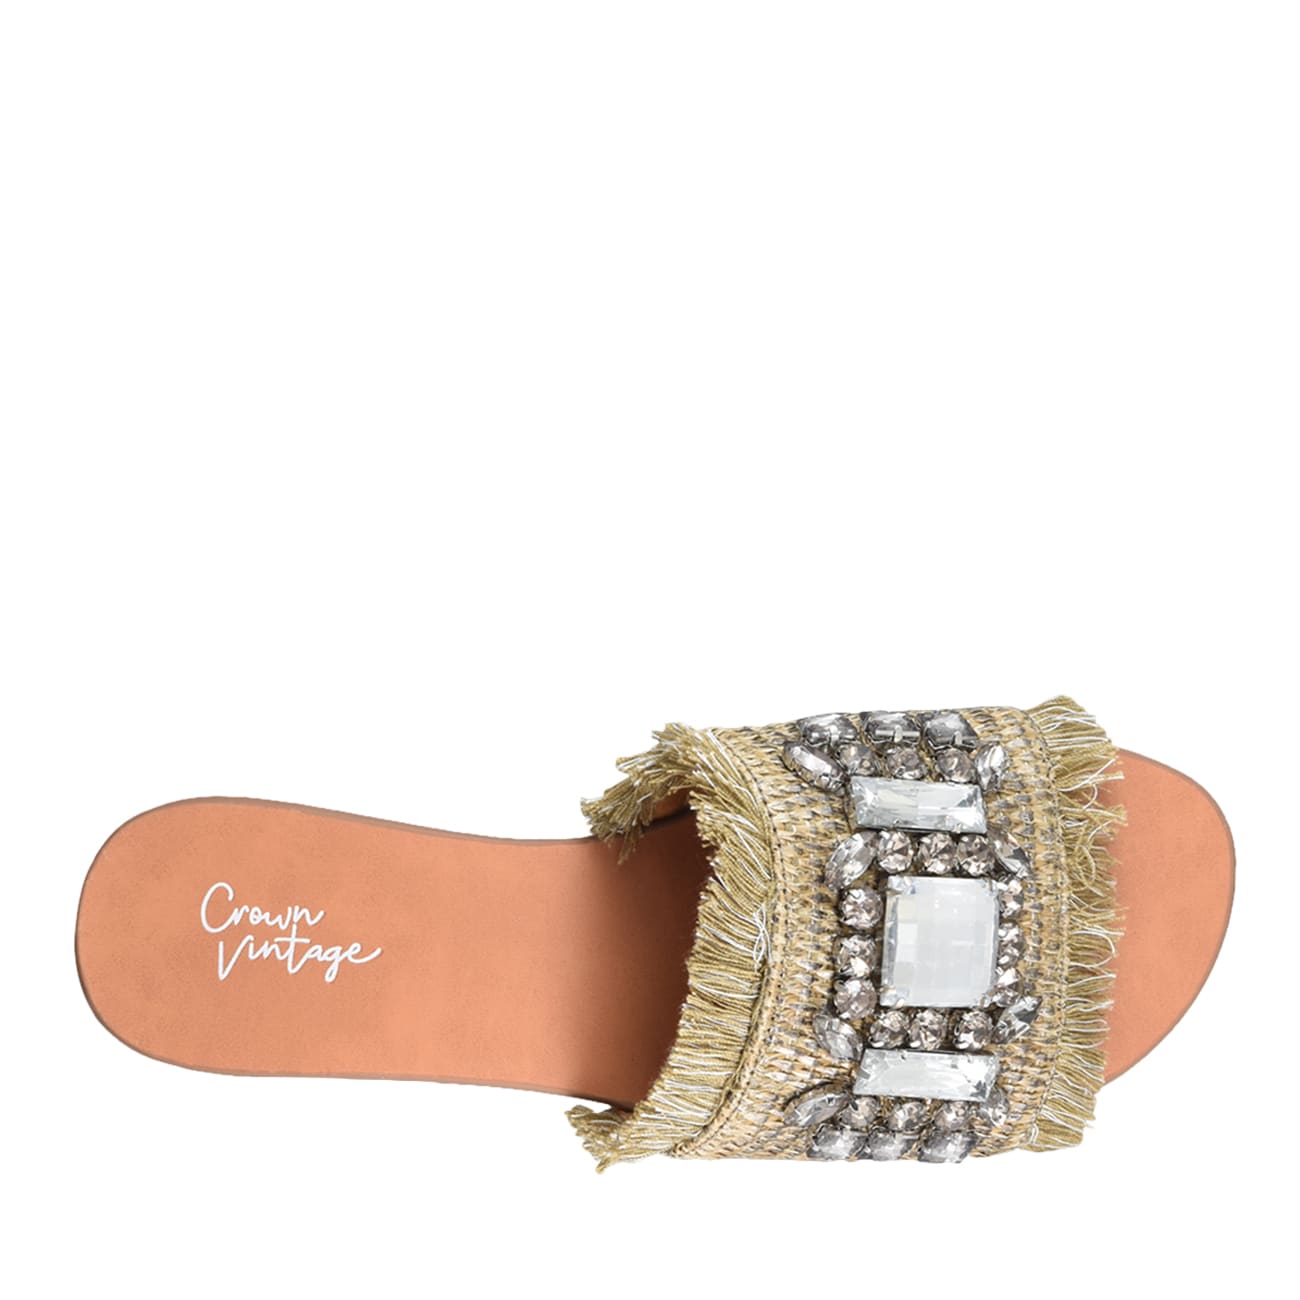 crown vintage glorianna sandal